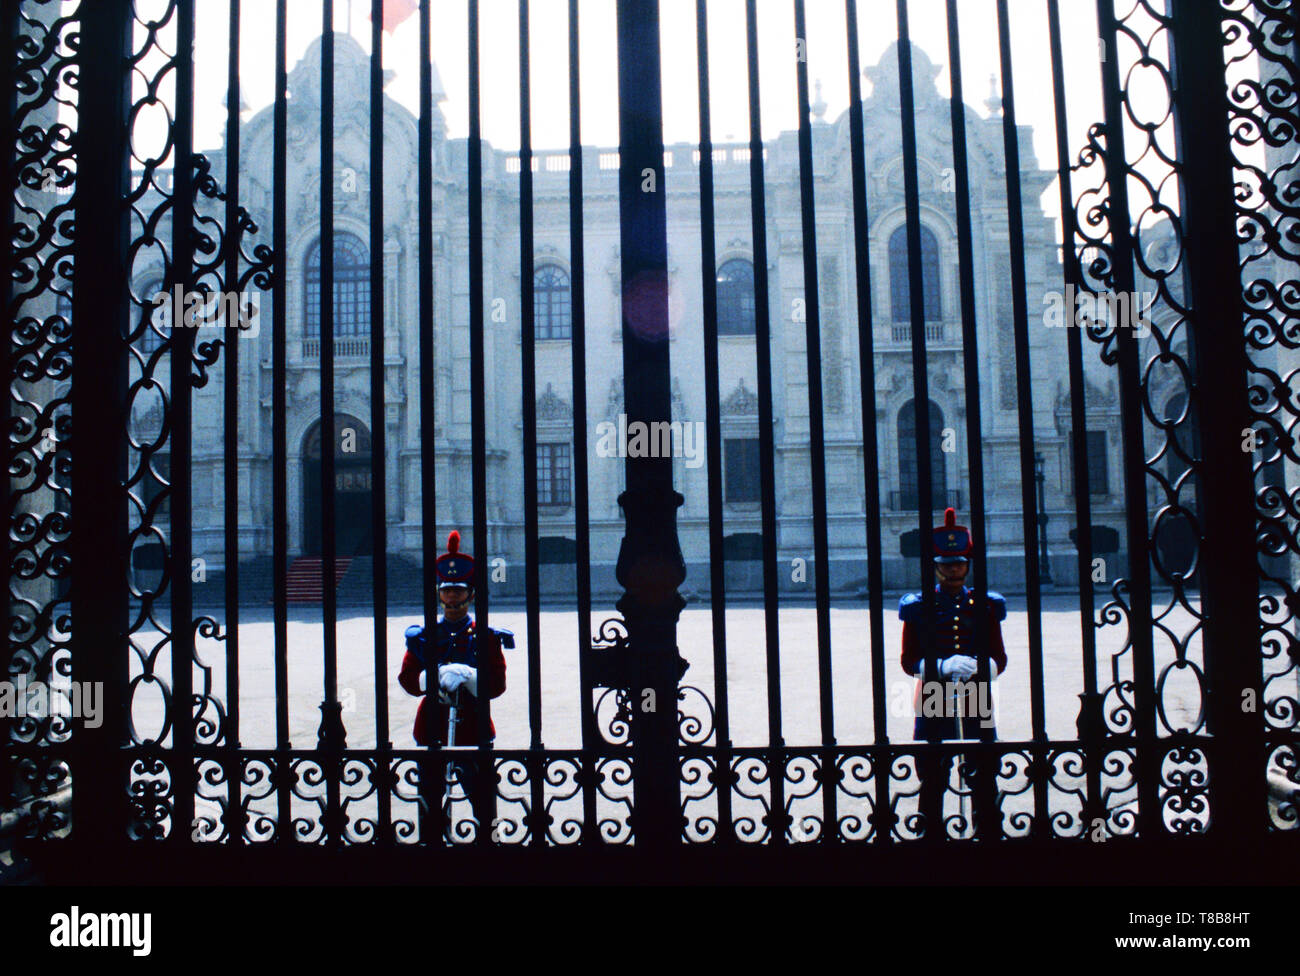 Palace guards,Government Palace,Lima,Peru Stock Photo